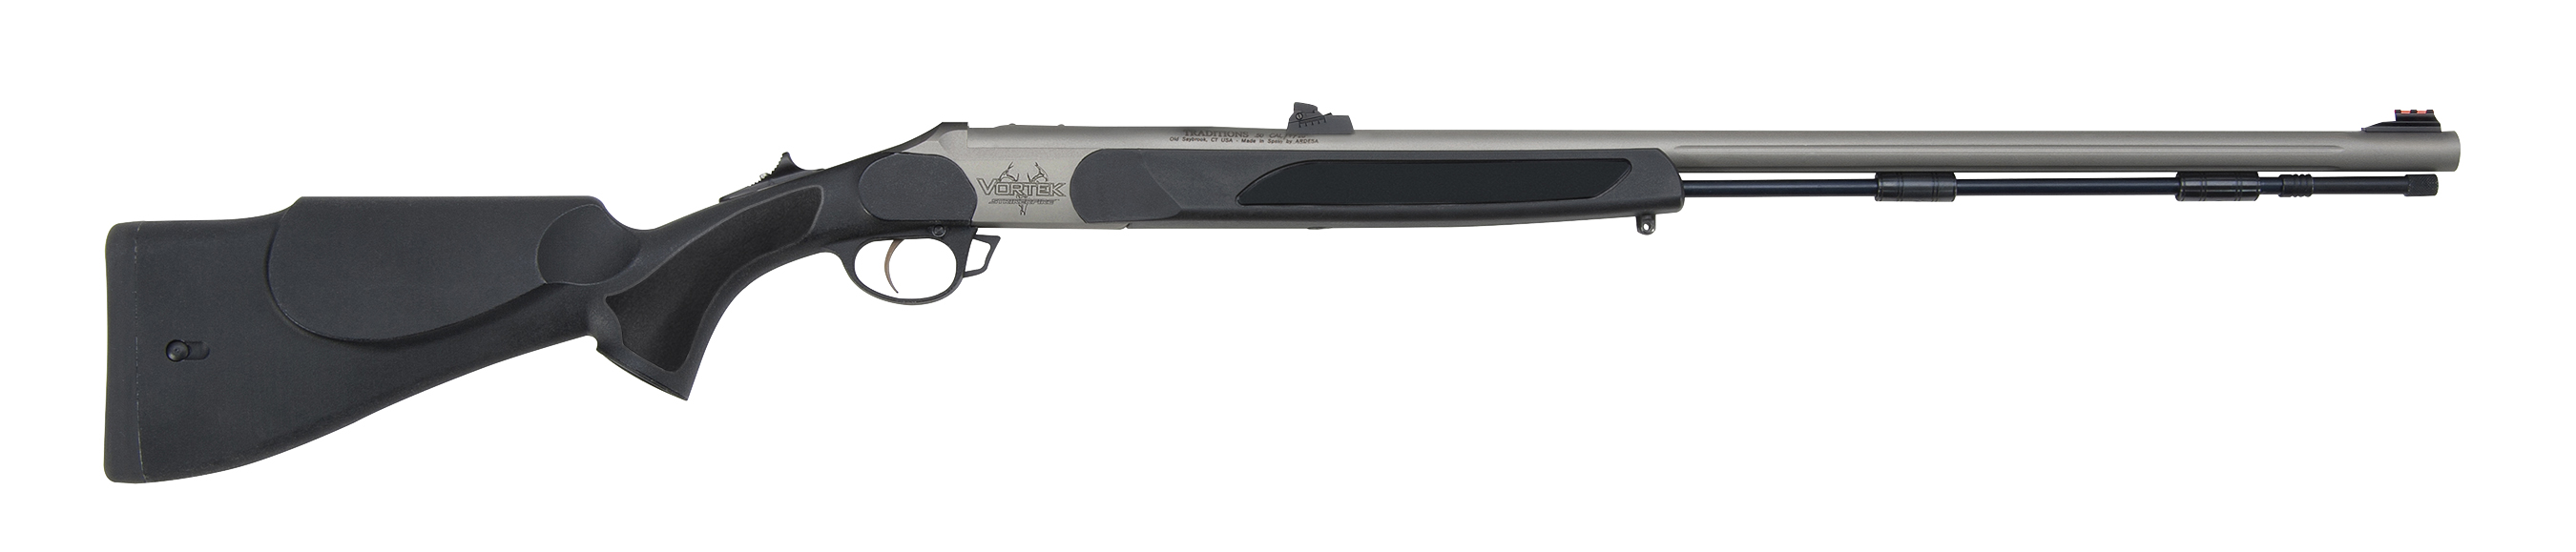 Vortek StrikerFire™ Northwest Magnum .50 cal Black/CeraKote R561120WM